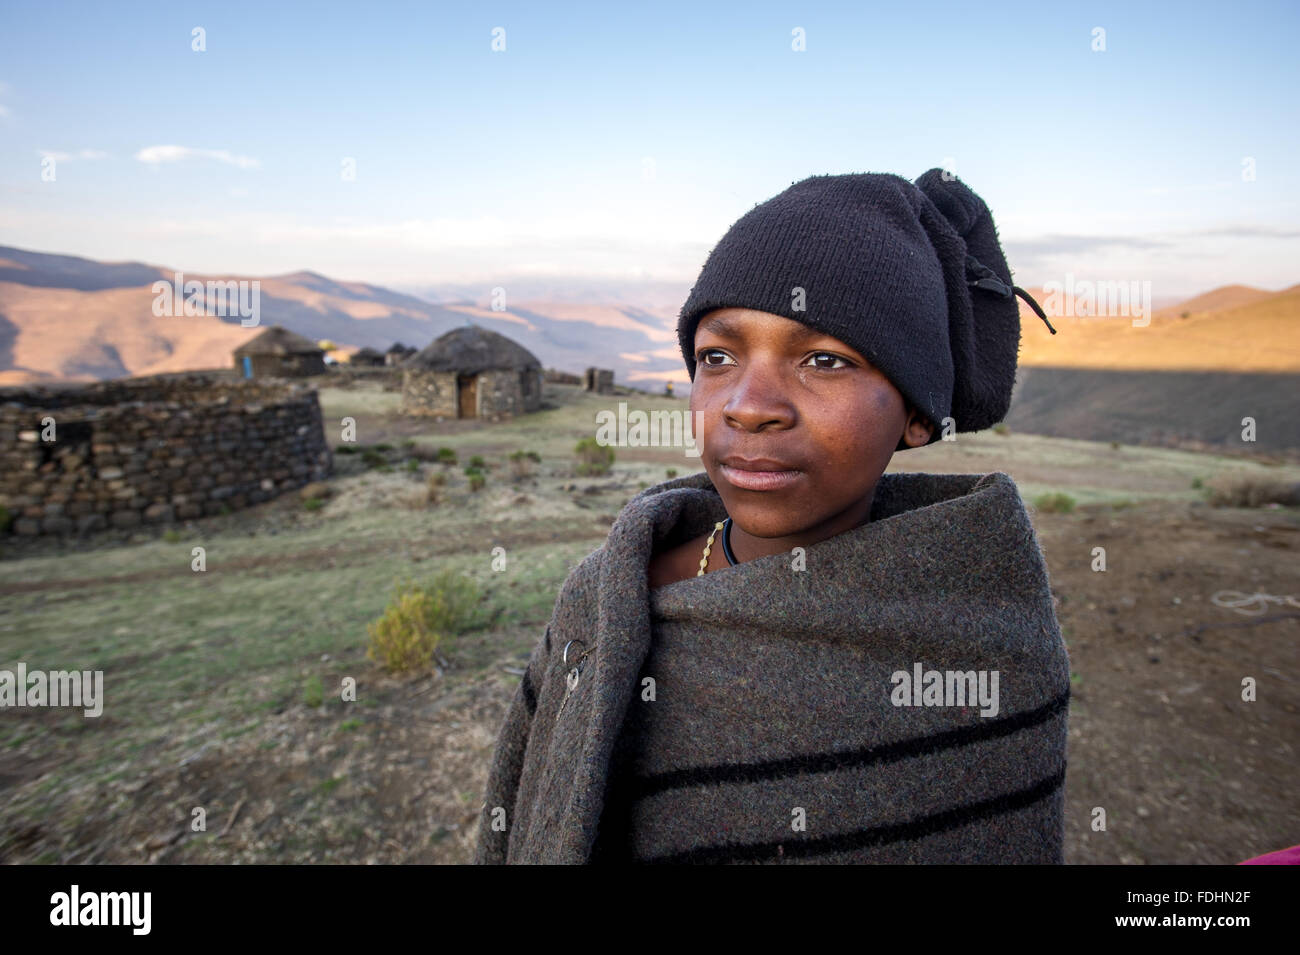 Jeune garçon enveloppé dans une couverture près d'une cabane en pierre au Lesotho, l'Afrique Banque D'Images